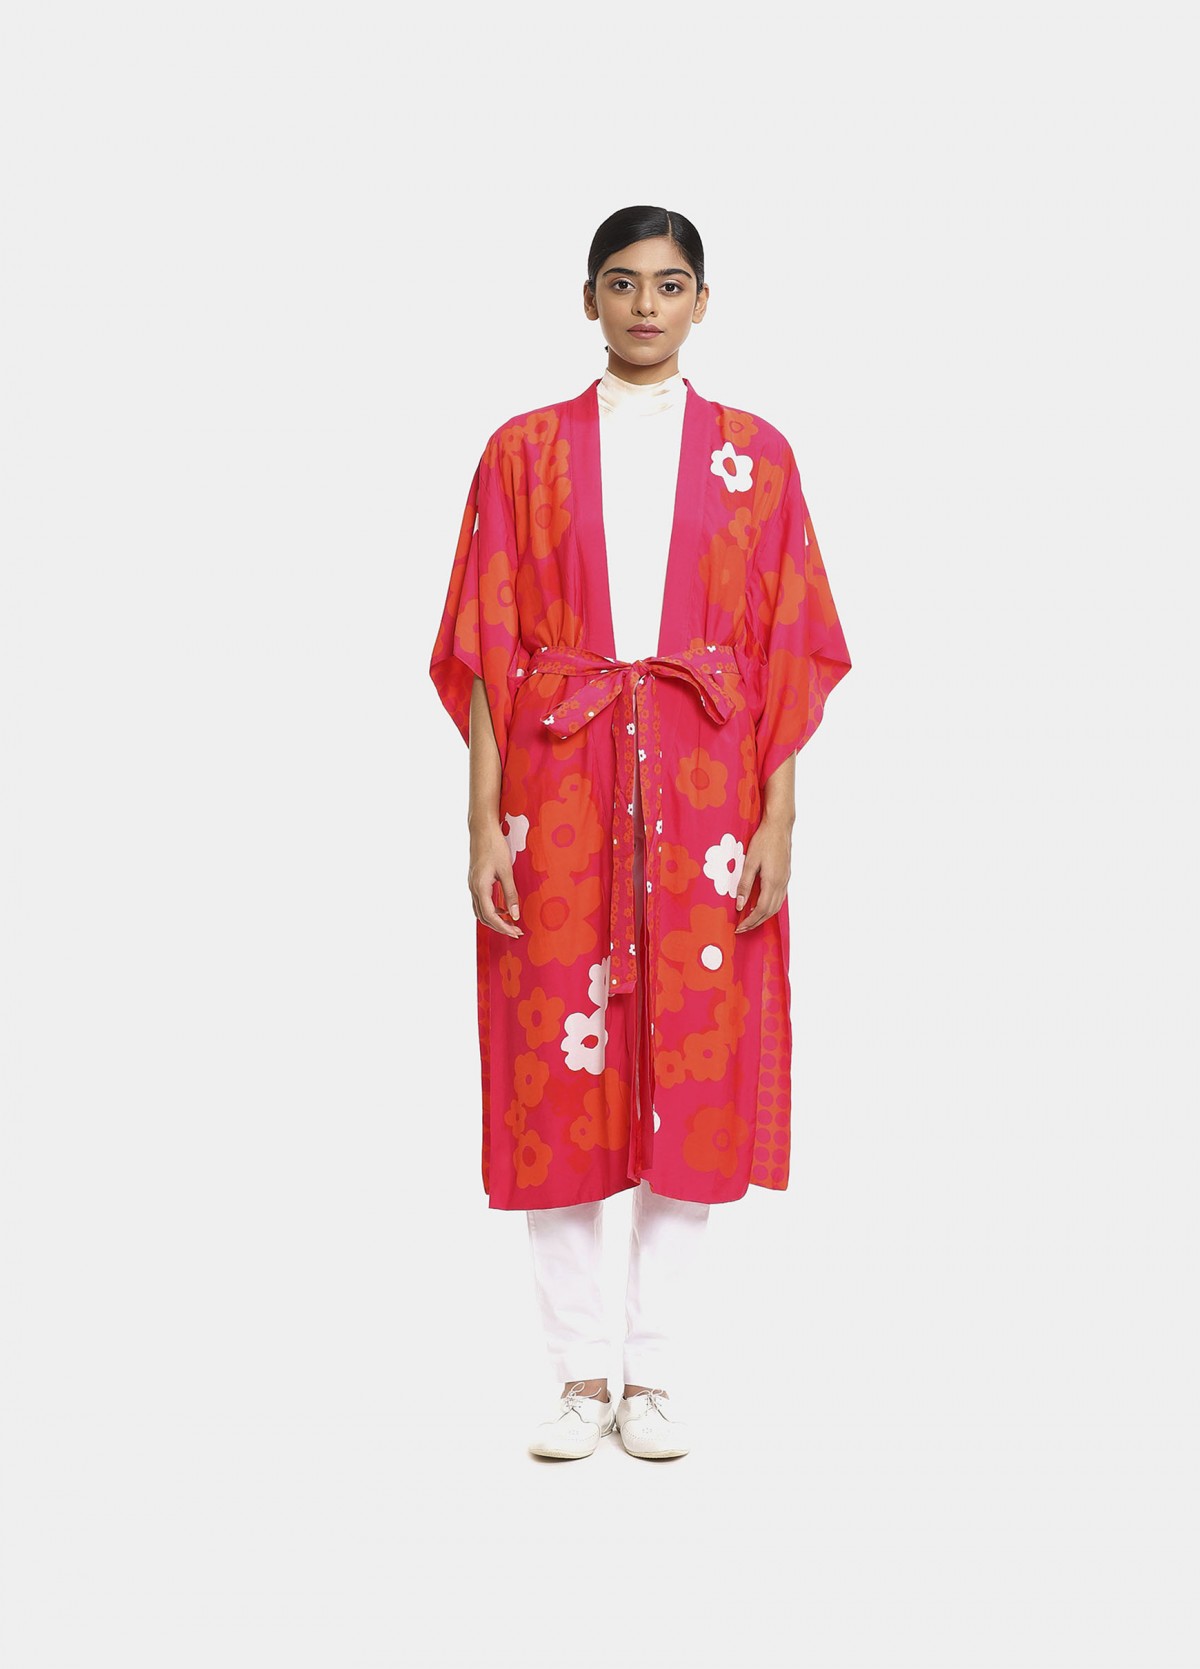 The Furano Kimono